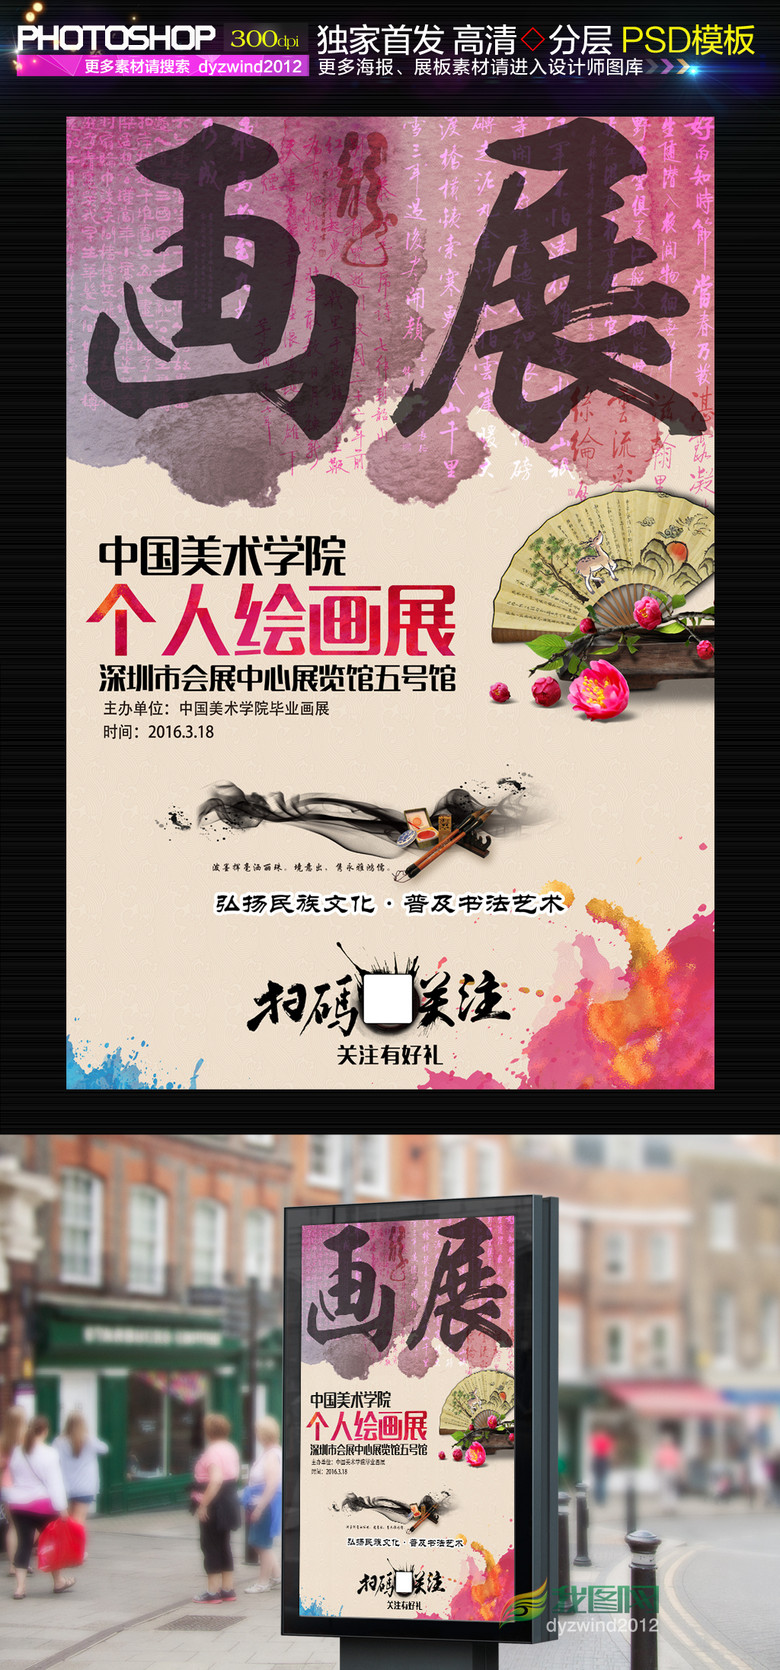 中国风水彩书画展海报设计